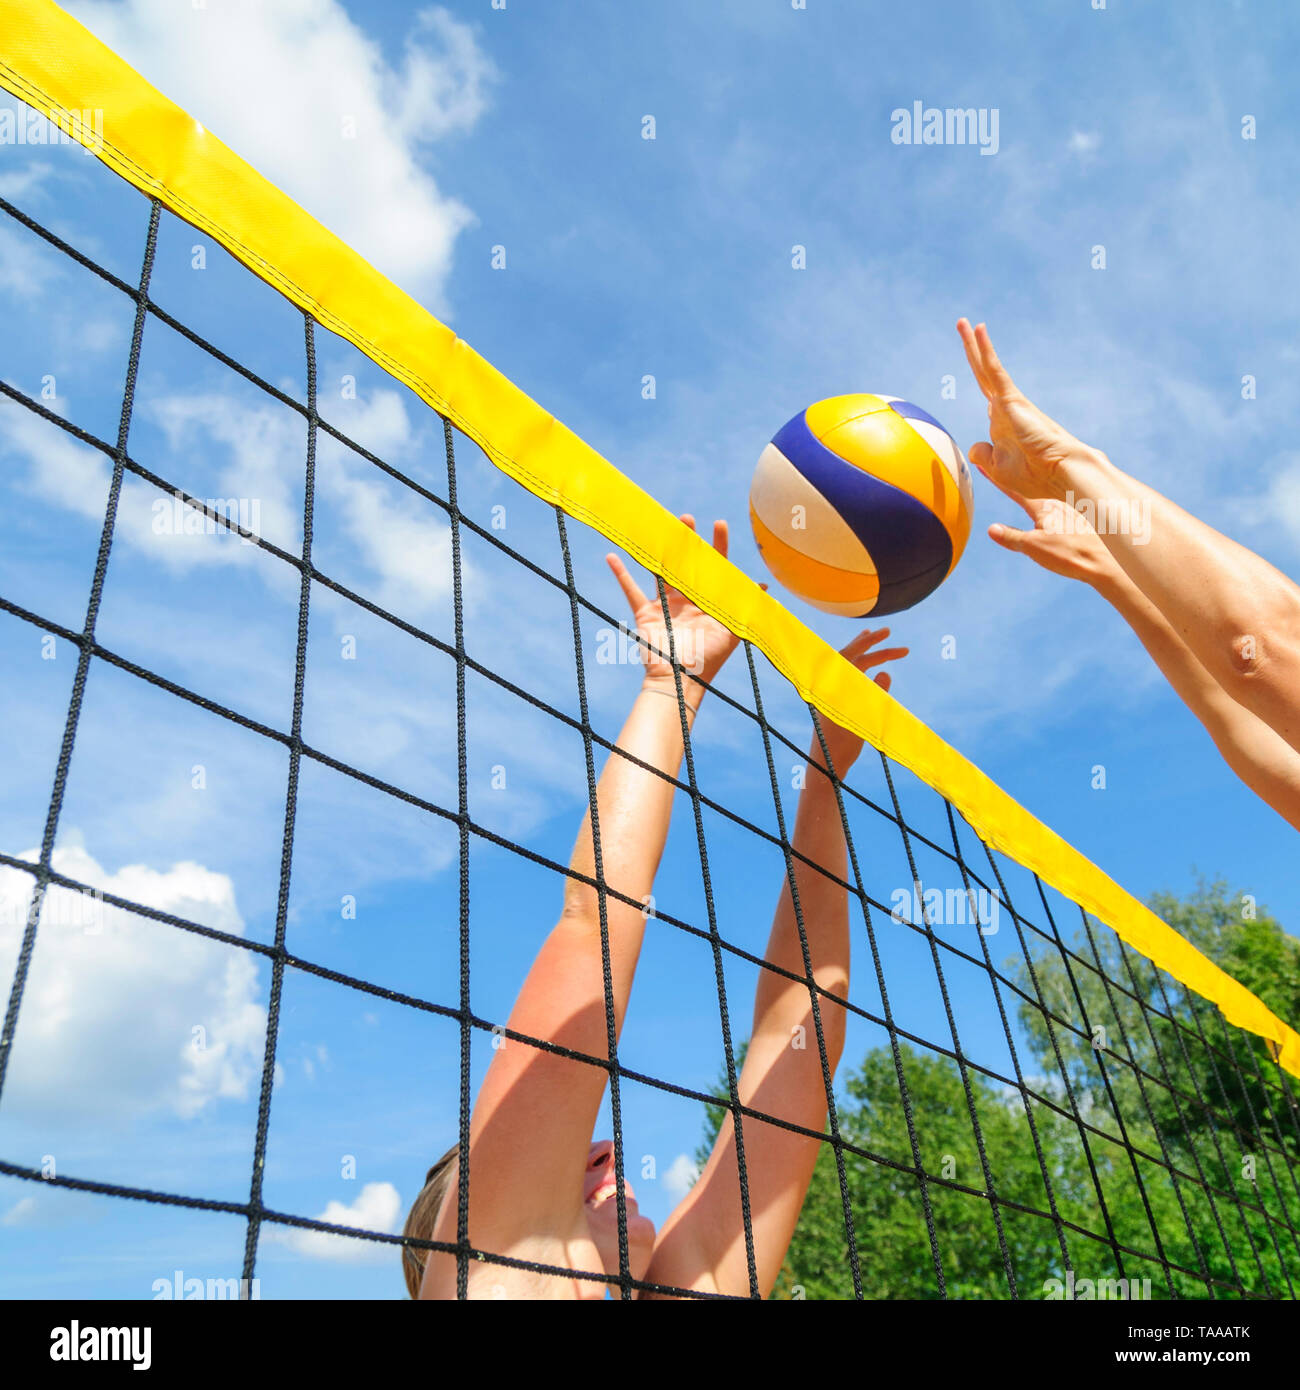 Konkurrierende Spiel auf Beachvolleyball Court am Netz Stockfoto